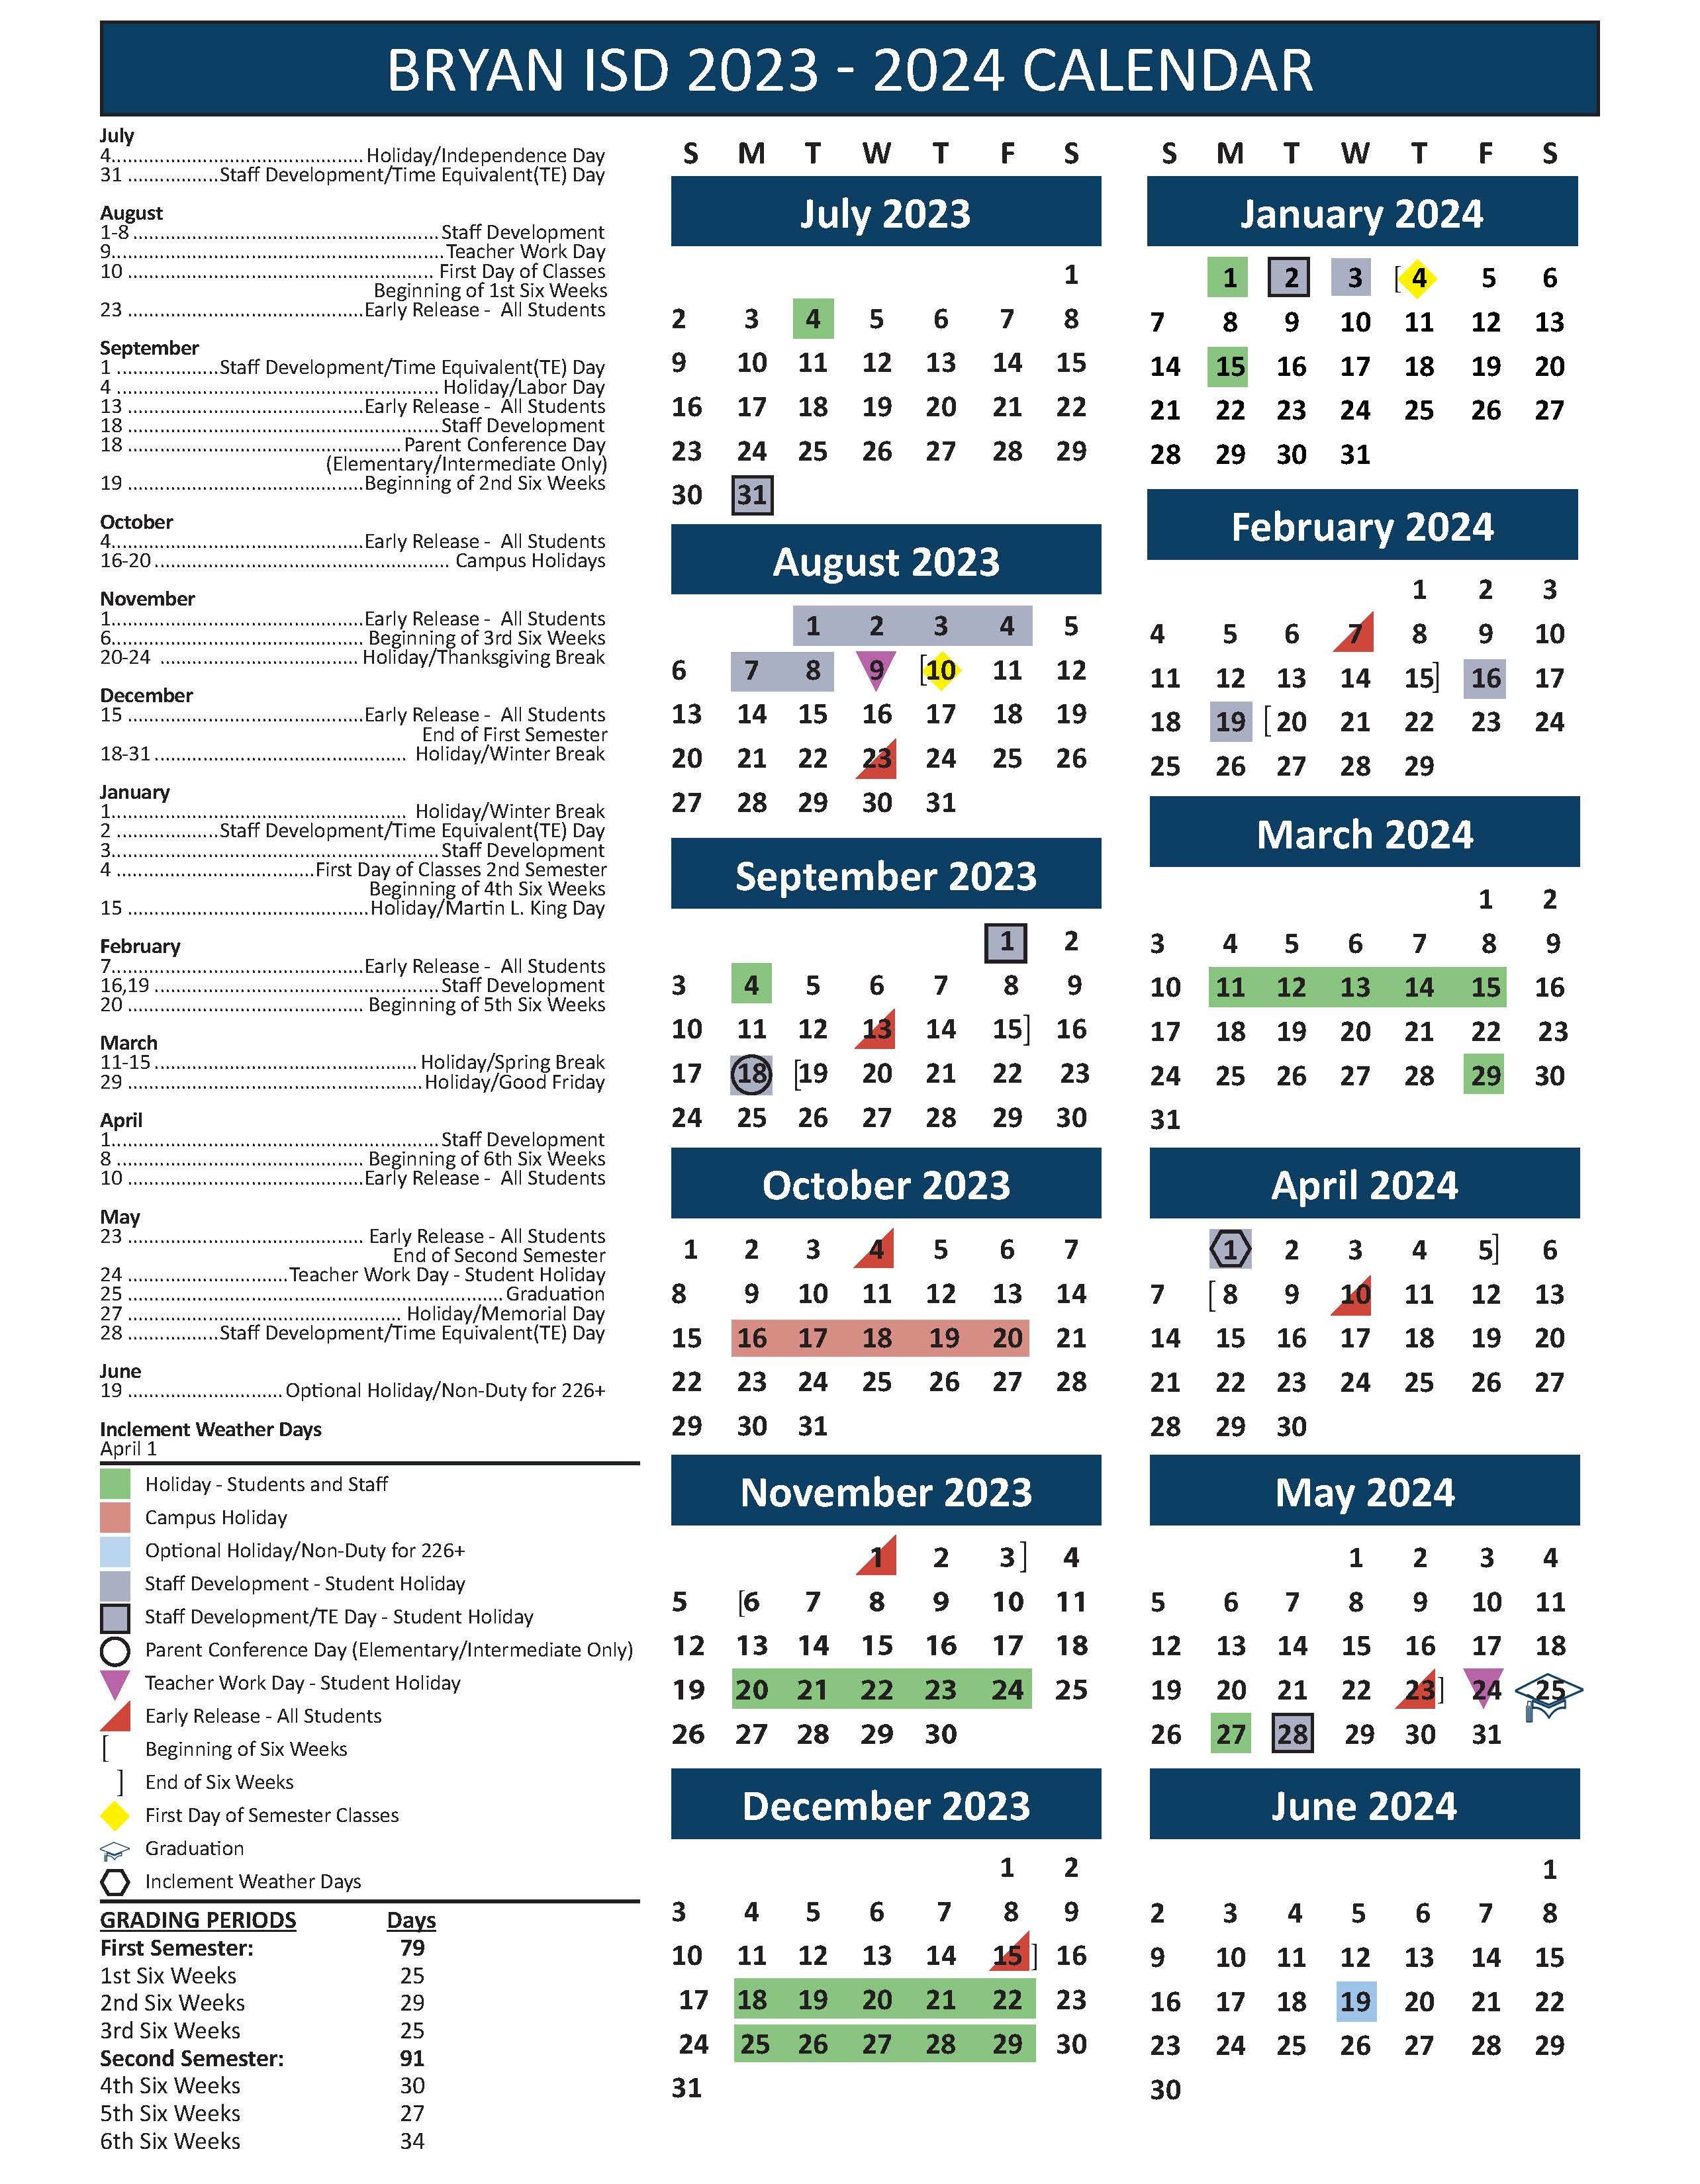 Bryan ISD 2023-2024 Academic Calendar